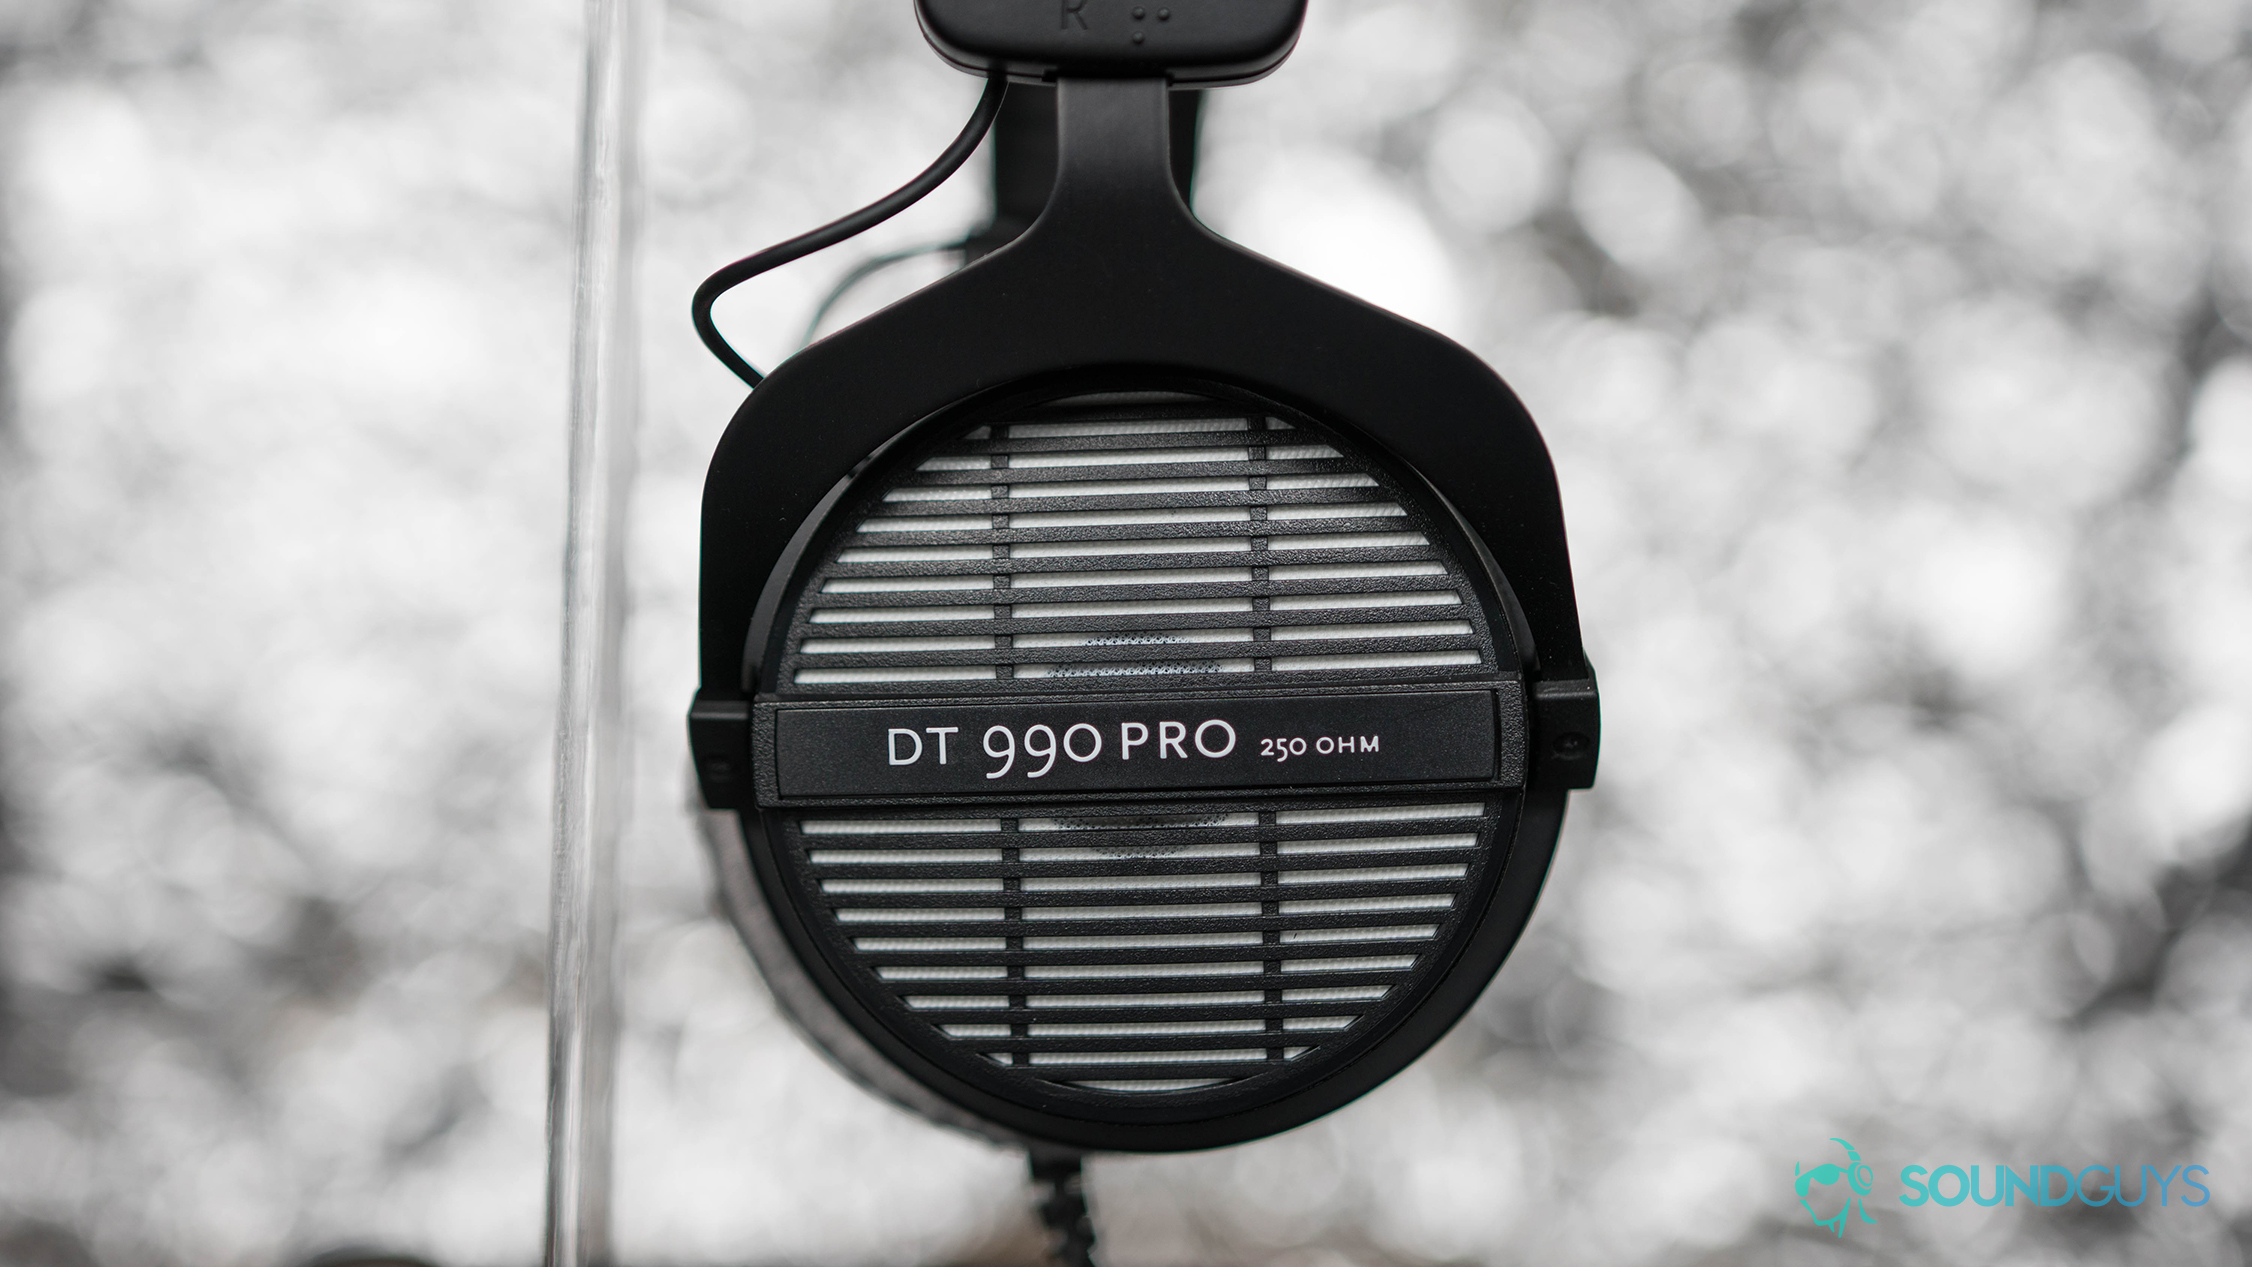 Beyerdynamic DT 990 Pro open-back headphones.